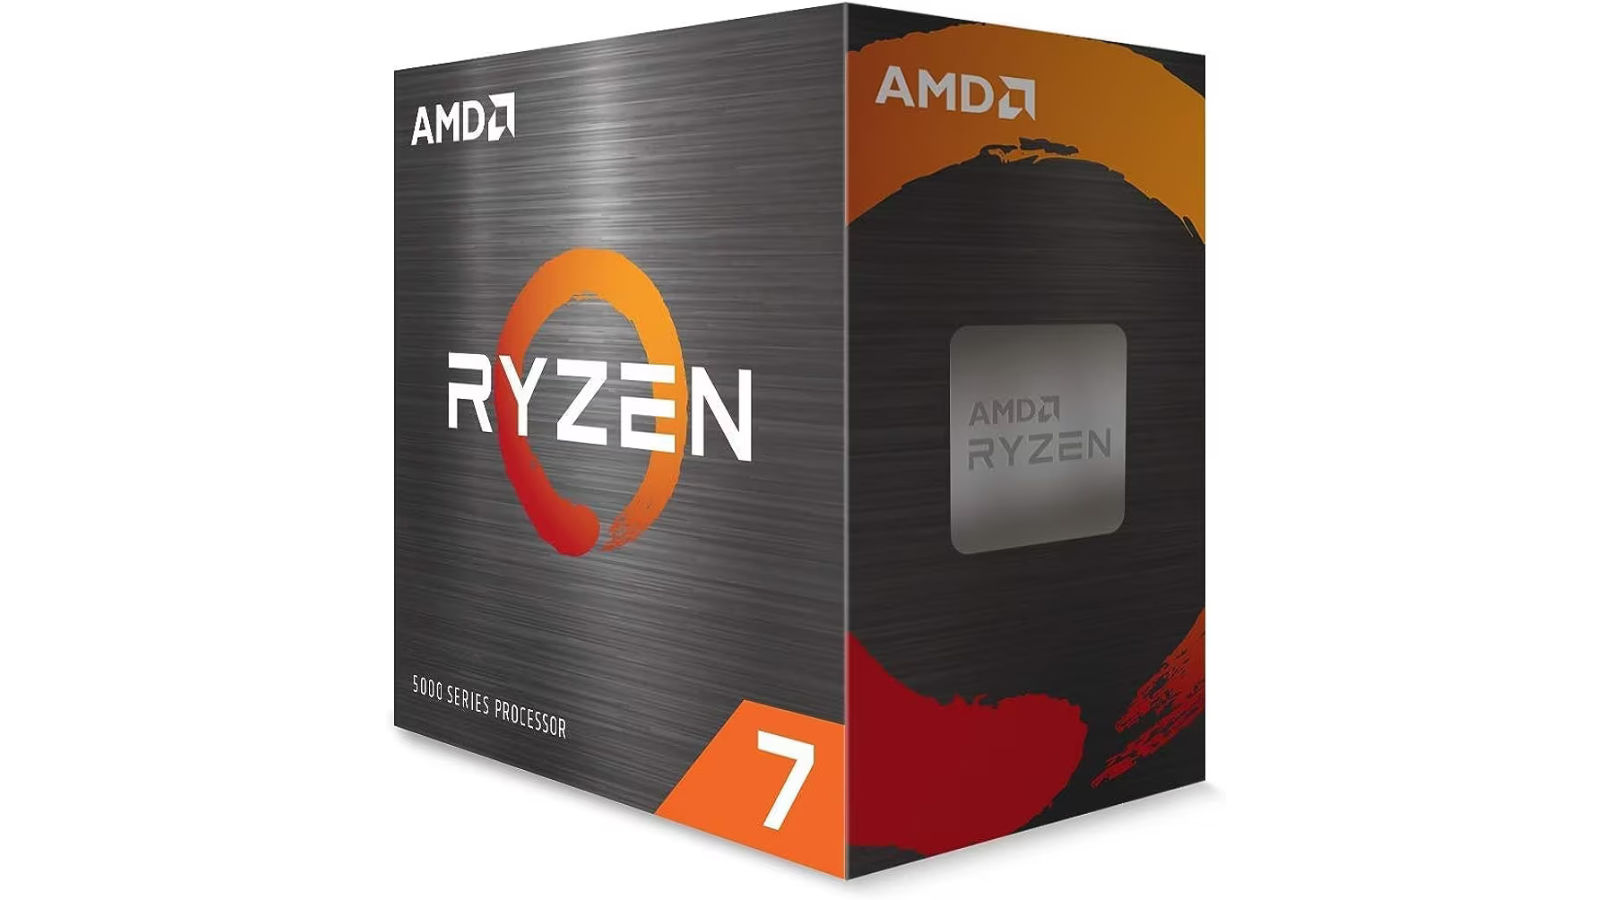 AMD Ryzen 7 5800X retail box against a white background.